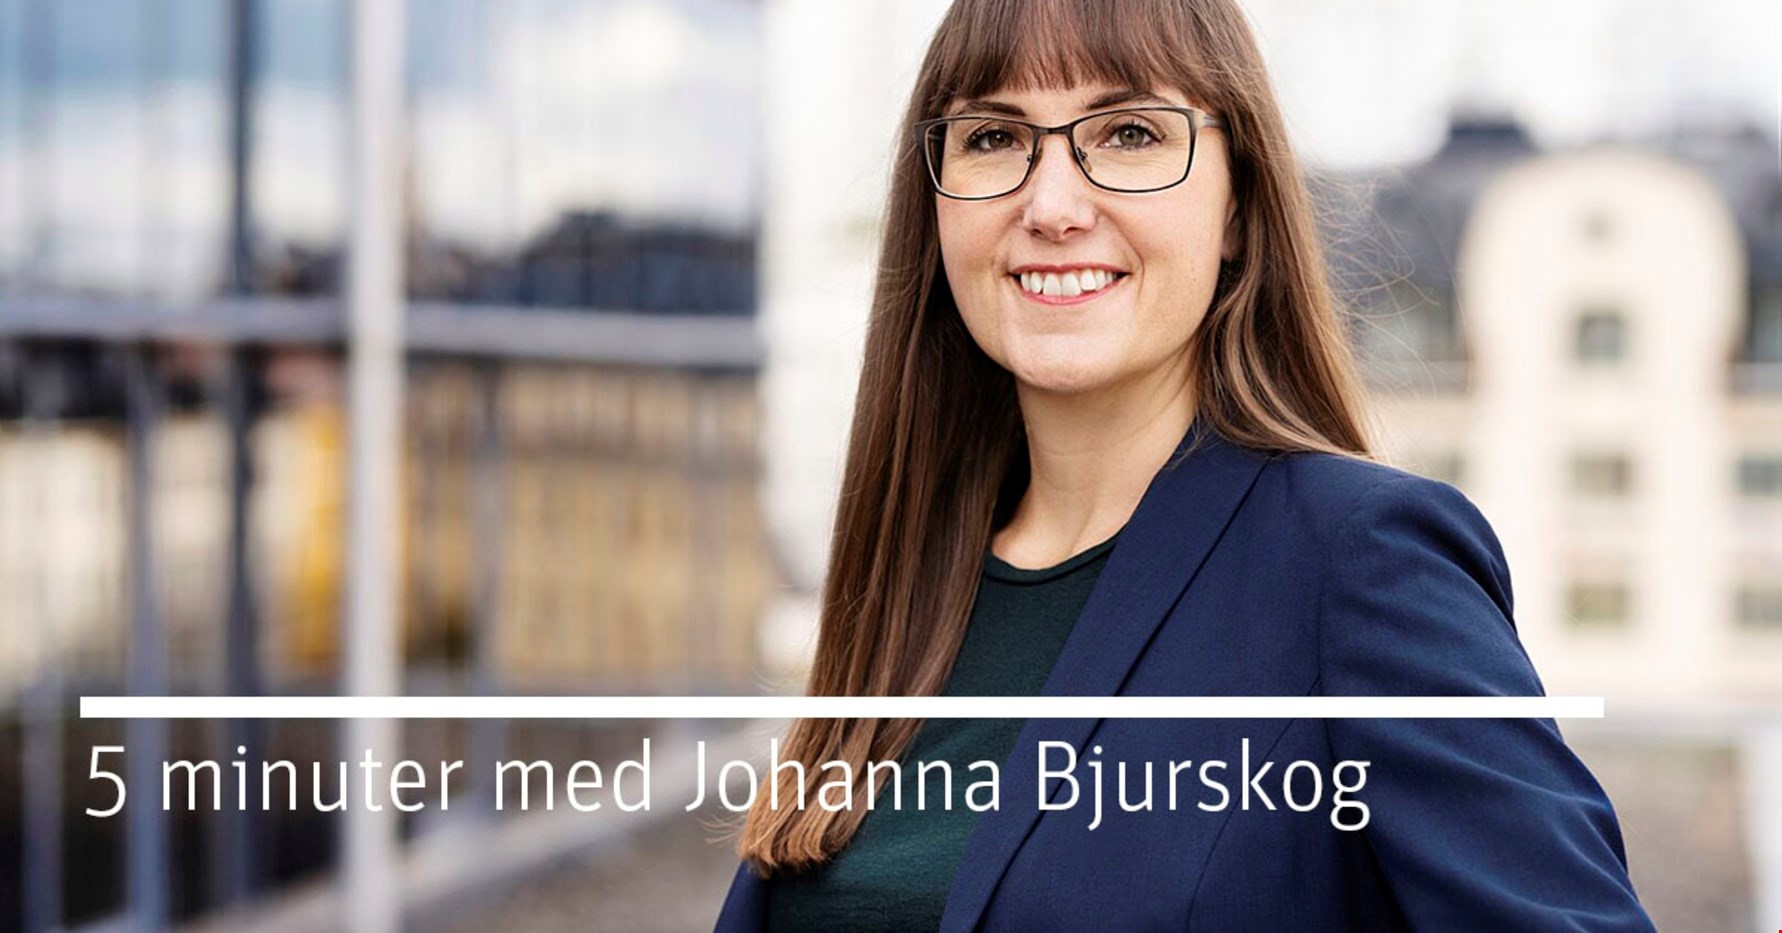 Vårbudgeten och amorteringsutredning – 5 minuter bostadspolitik med Johanna Bjurskog